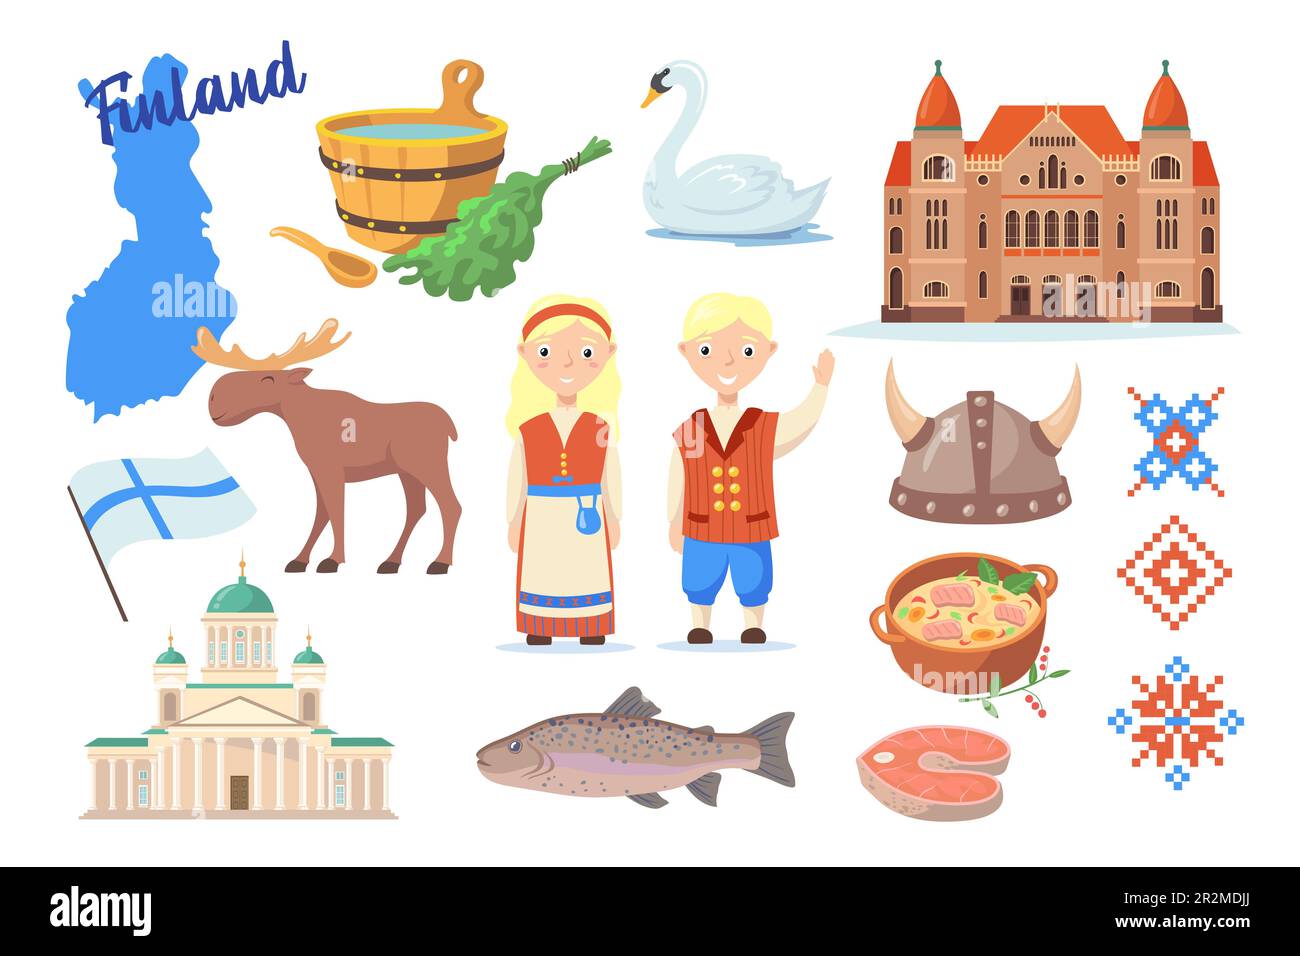 Traditional symbols of Finland cartoon vector illustration Stock Vector